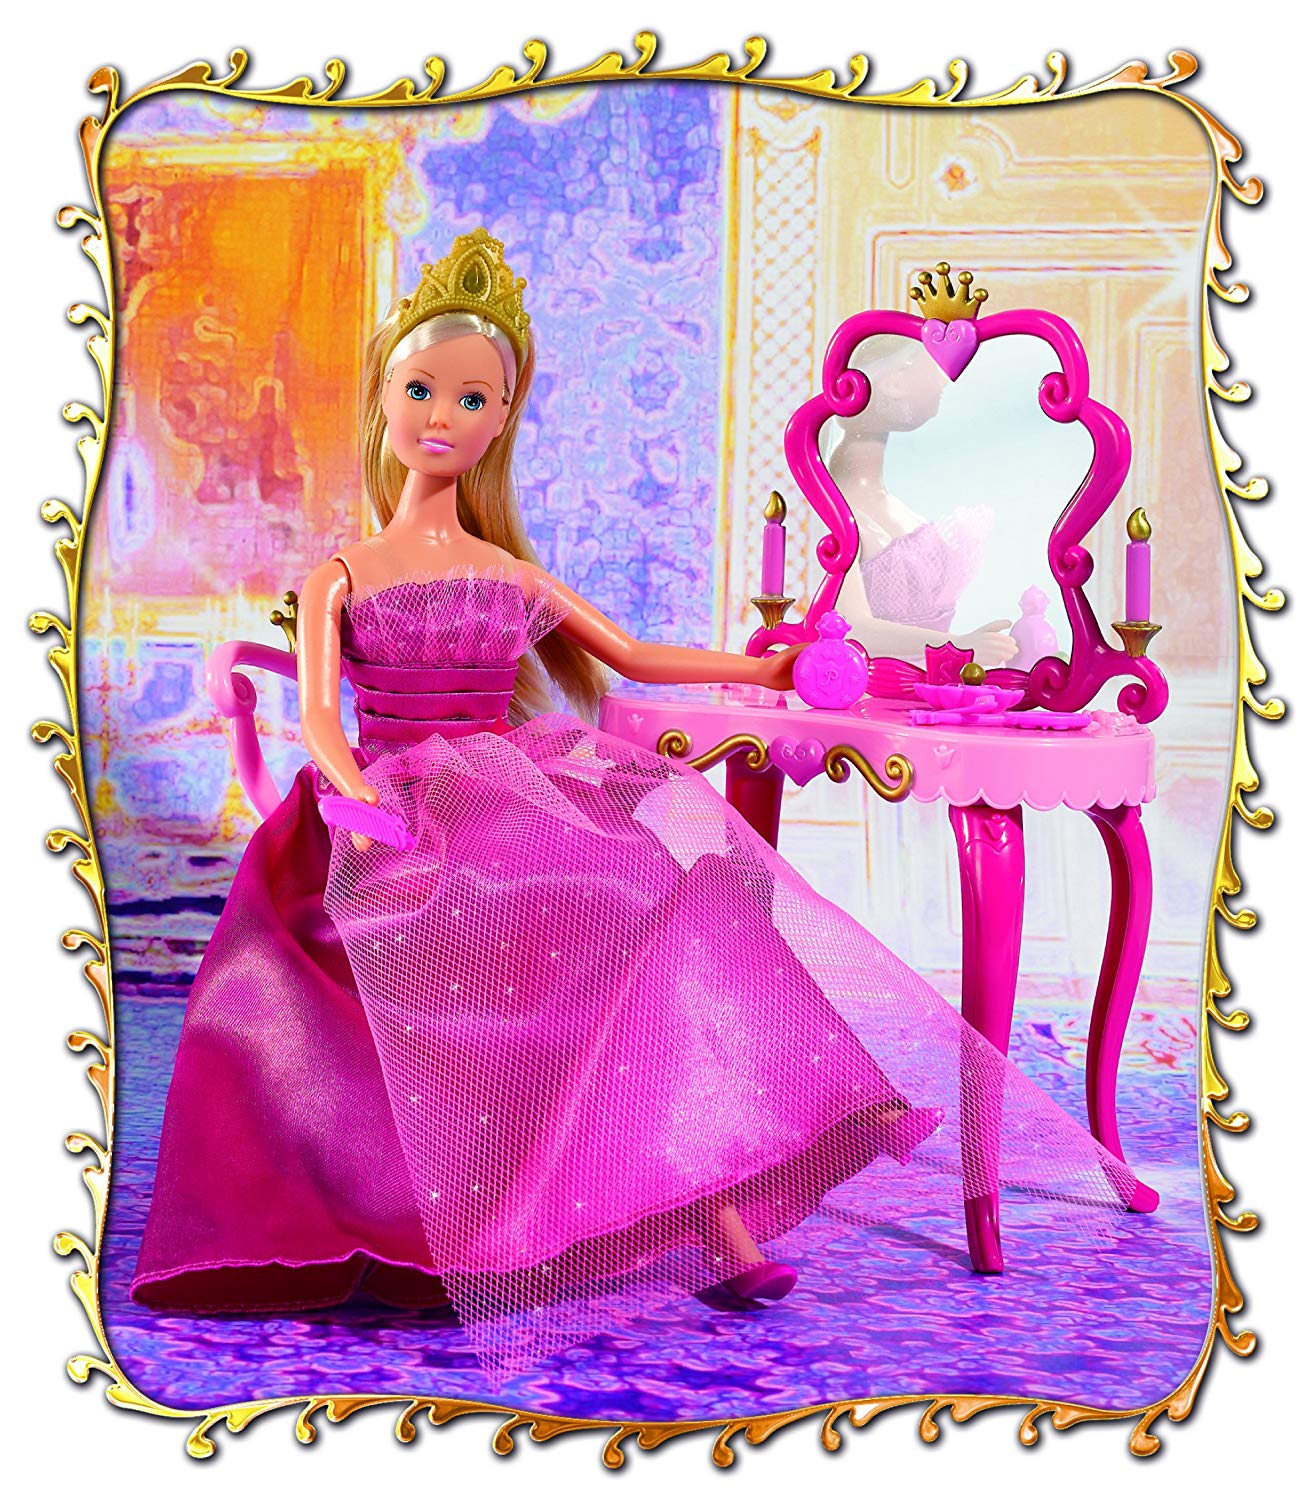 Кукла Штеффи-принцесса и столик  